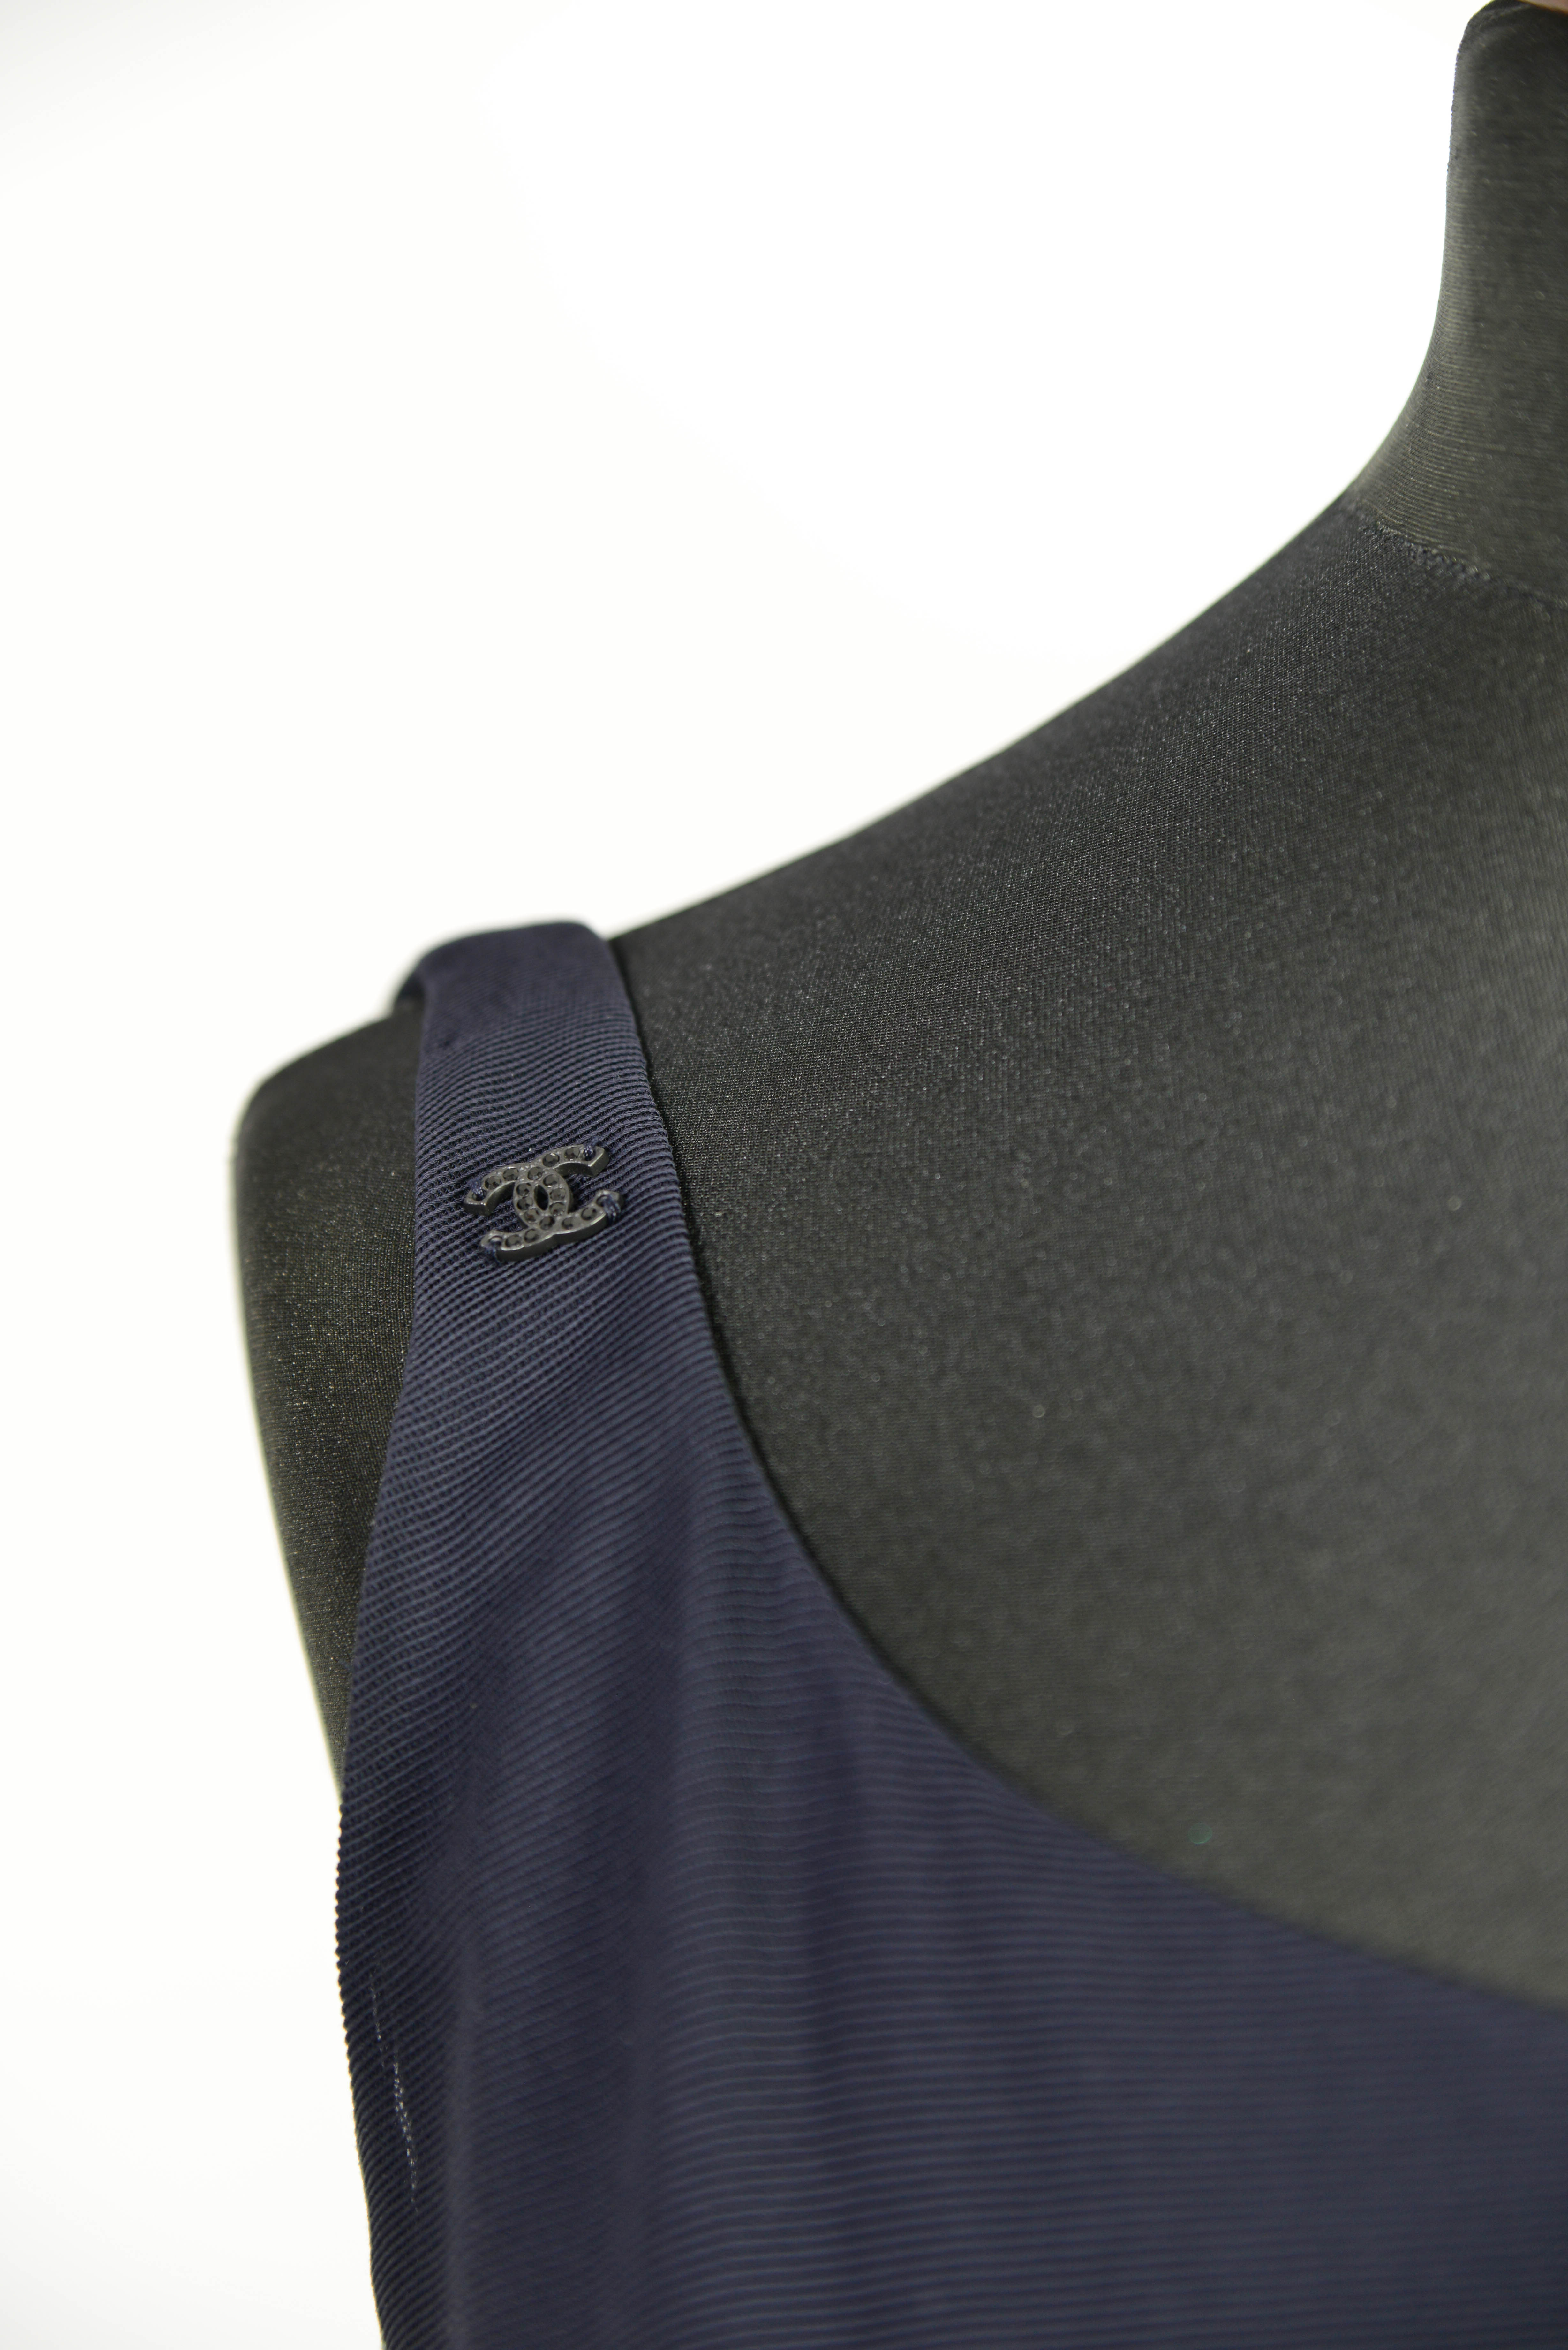 Ein Chanel Abendkleid in dunkelblau in der Groesse 38 mit Detailansicht vom Logo als Dekoelement